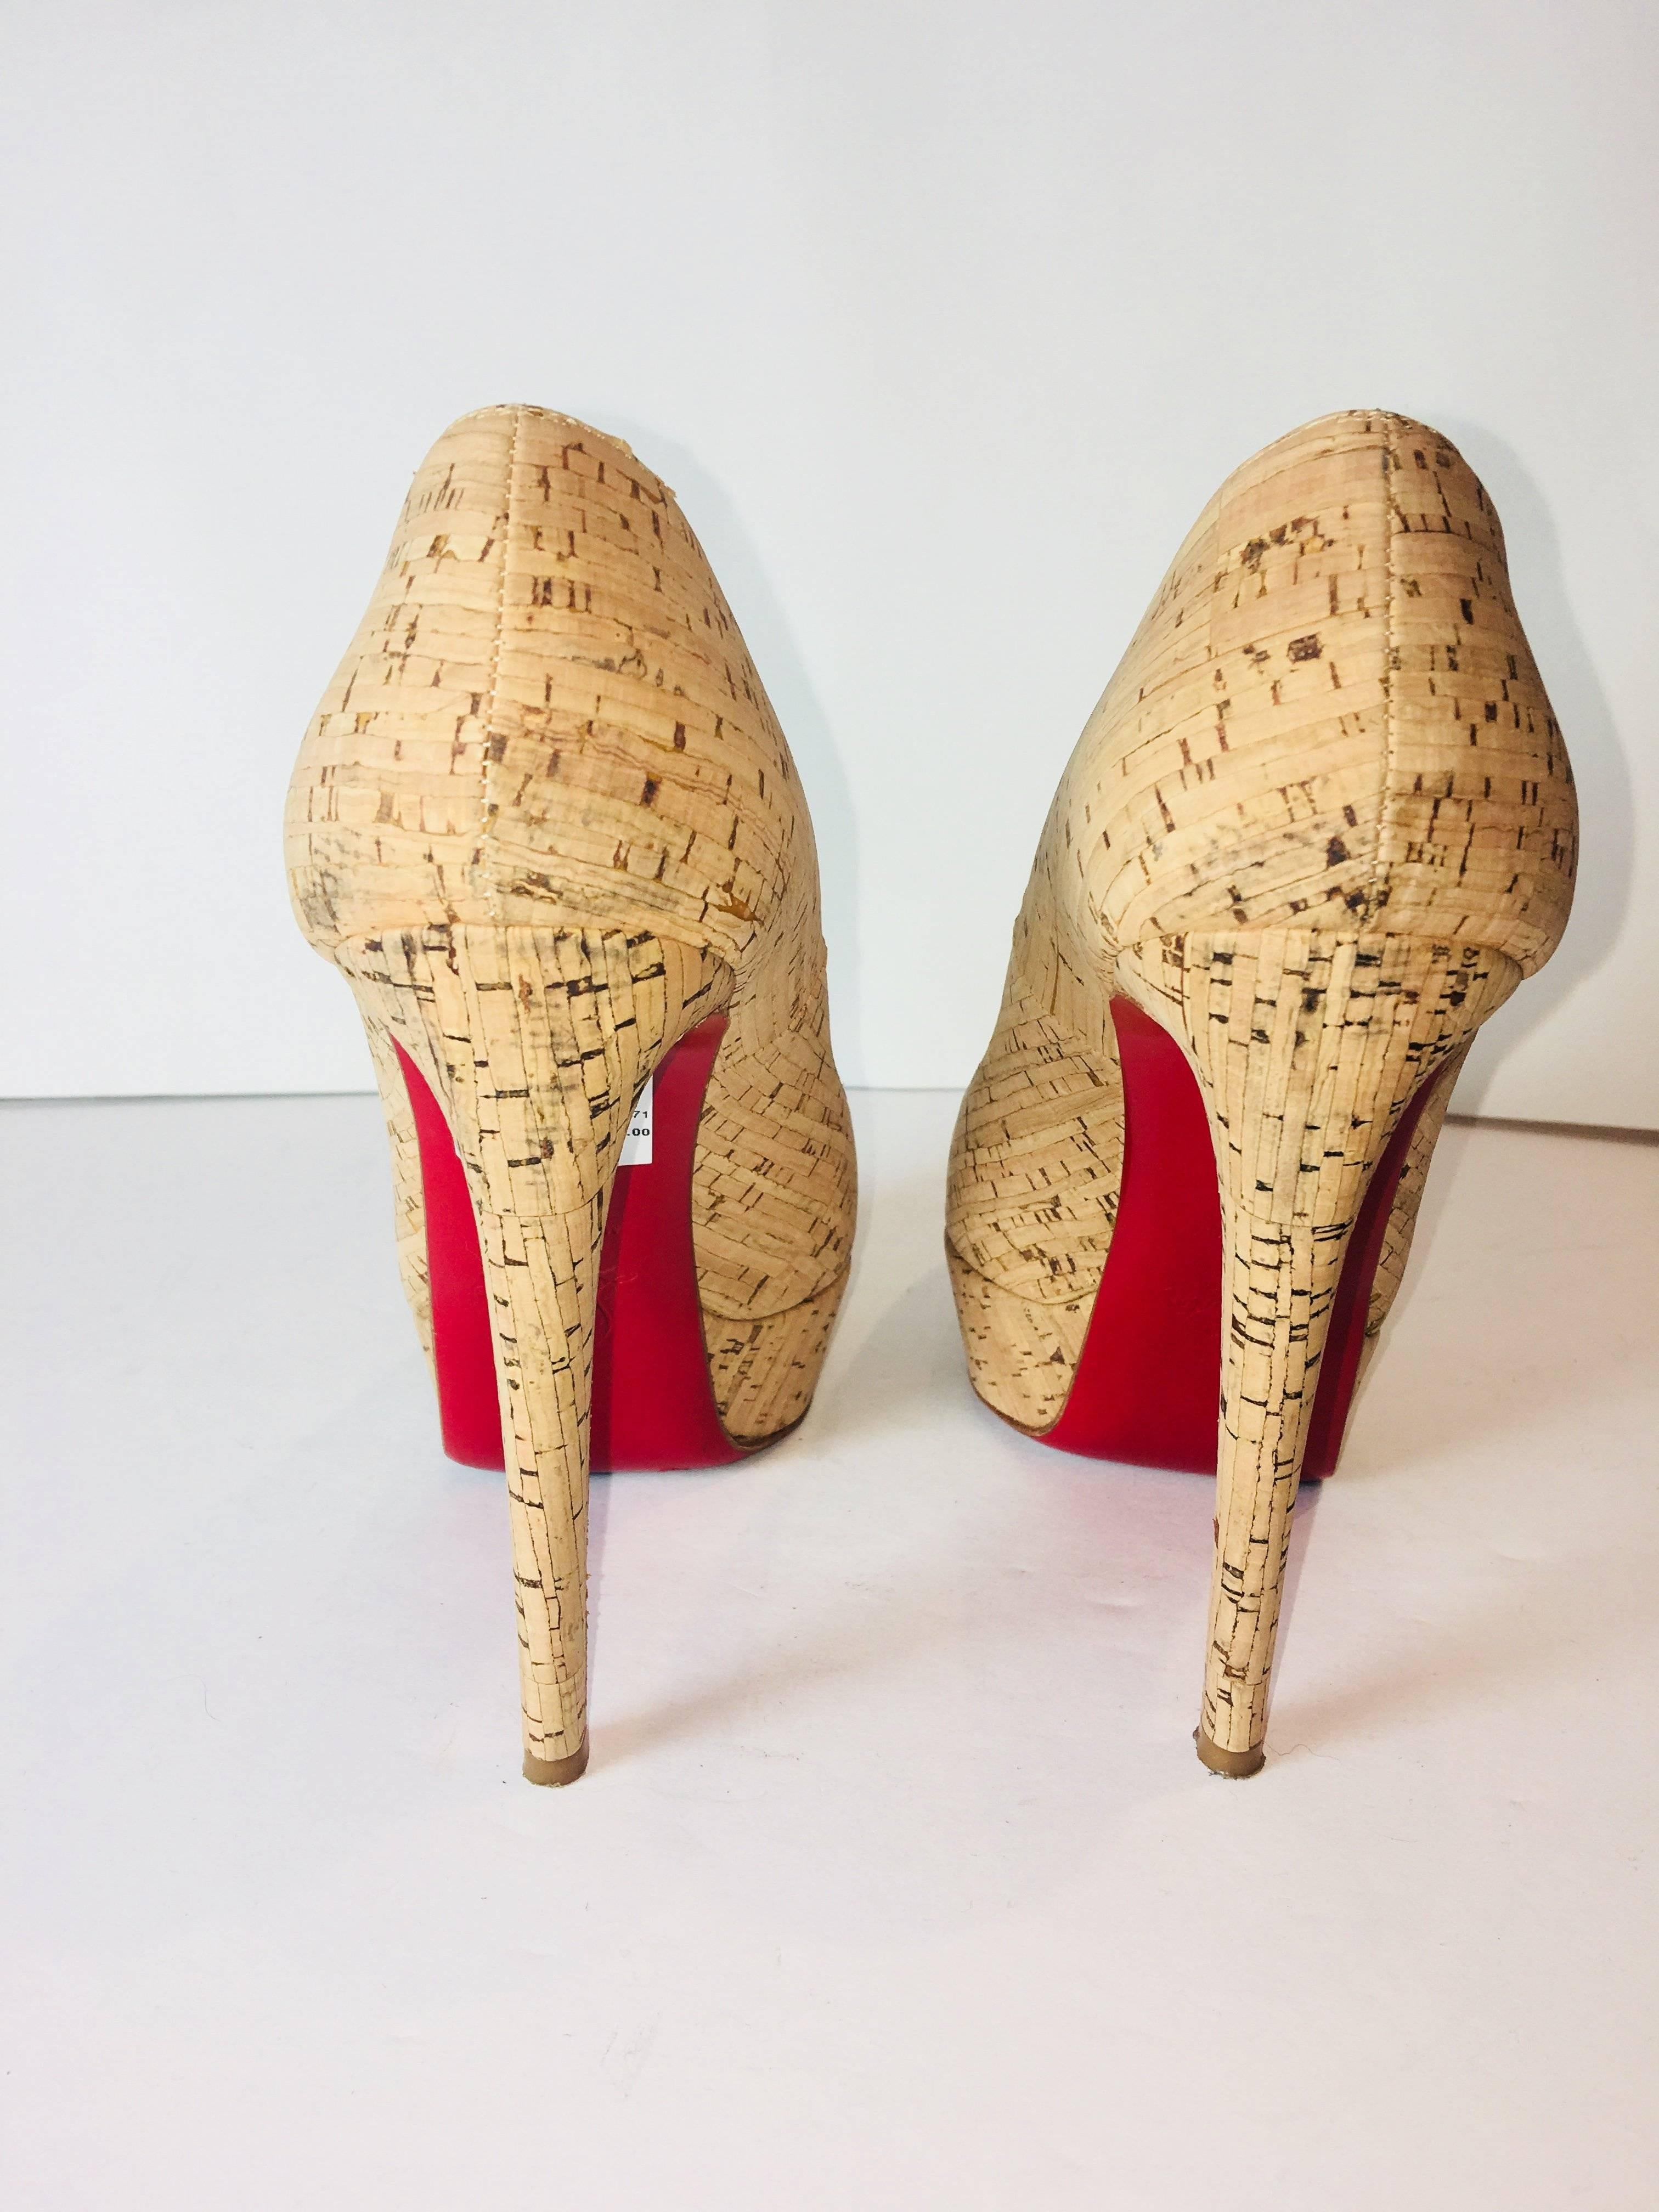 red cork heels